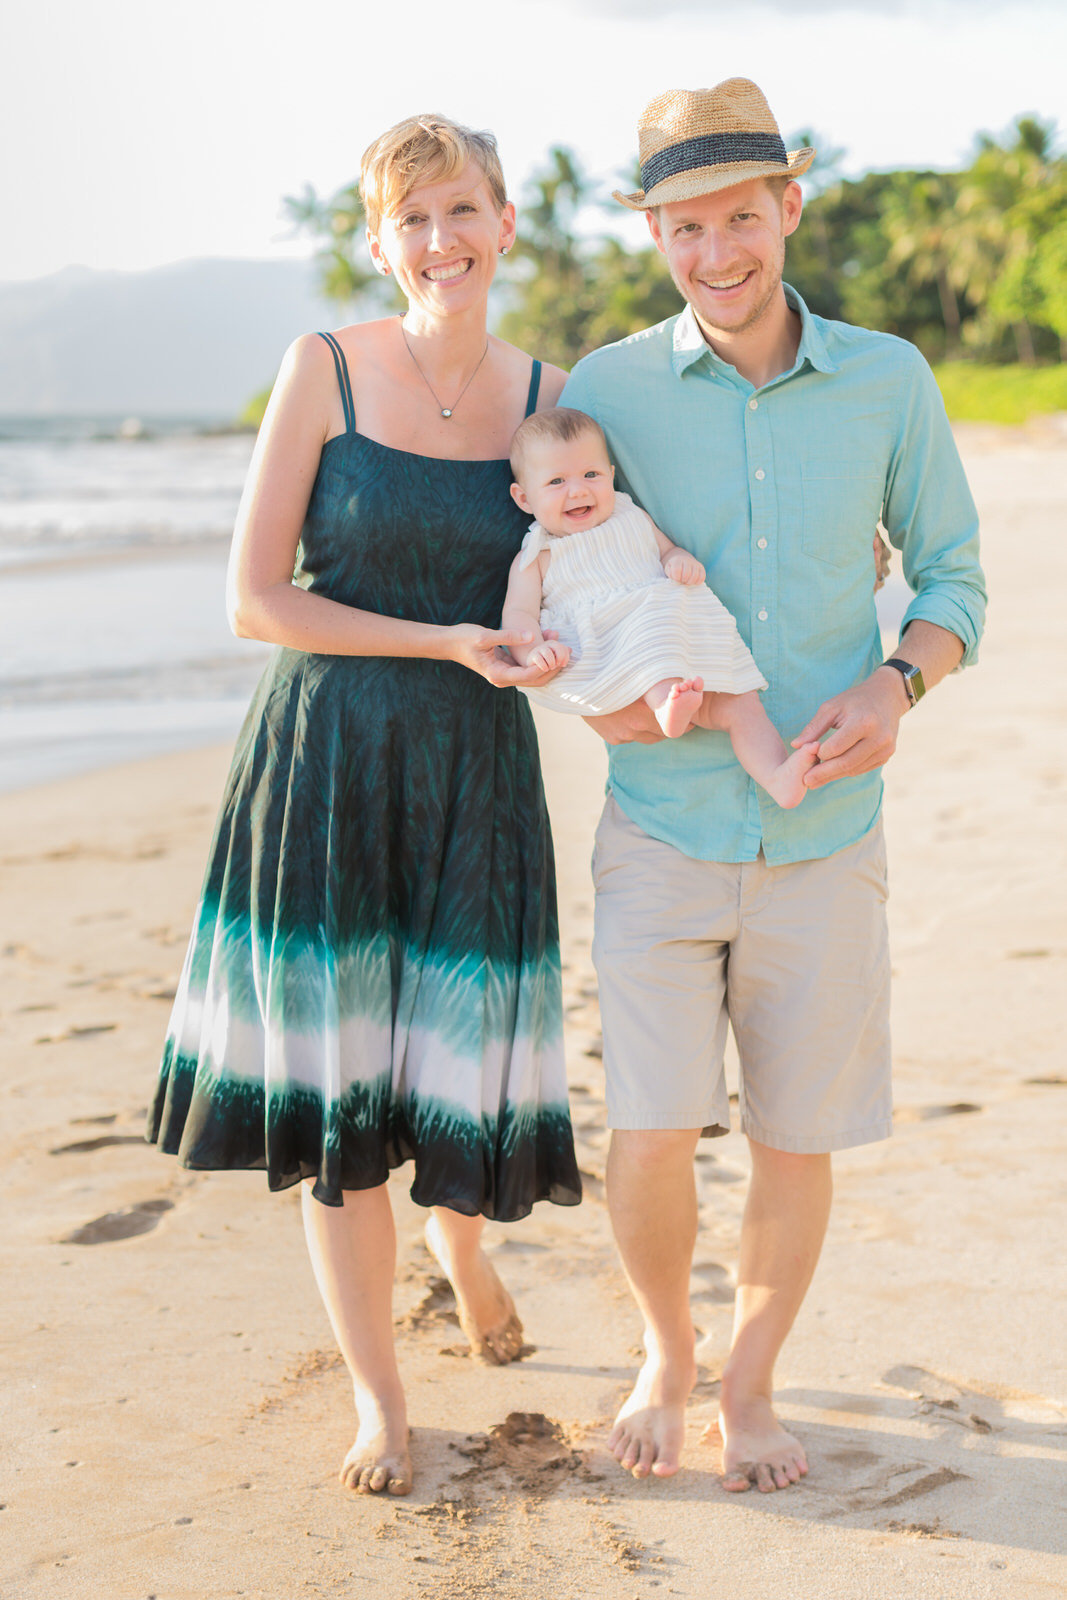 Maui family portrait photographers